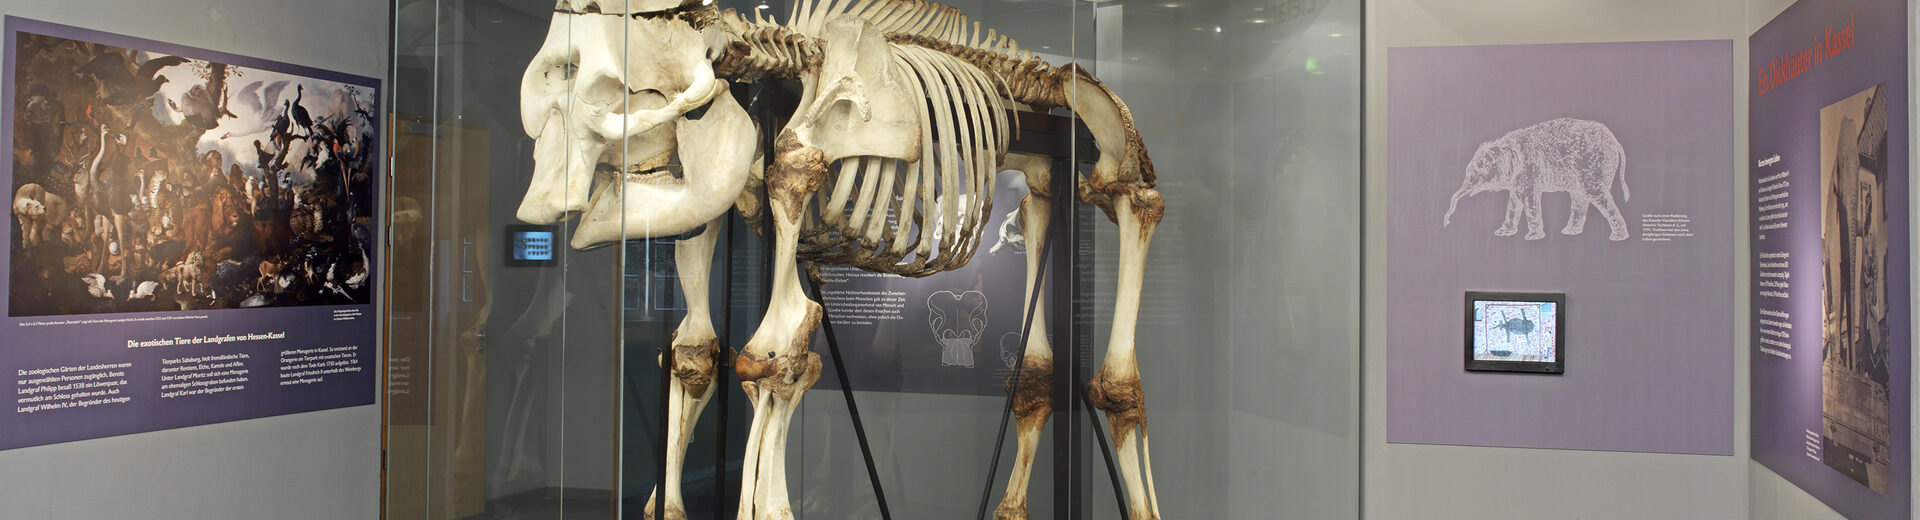 Eine Montage des Skeletts des Goethe-Elefanten, die in einer Vitrine ausgestellt ist.